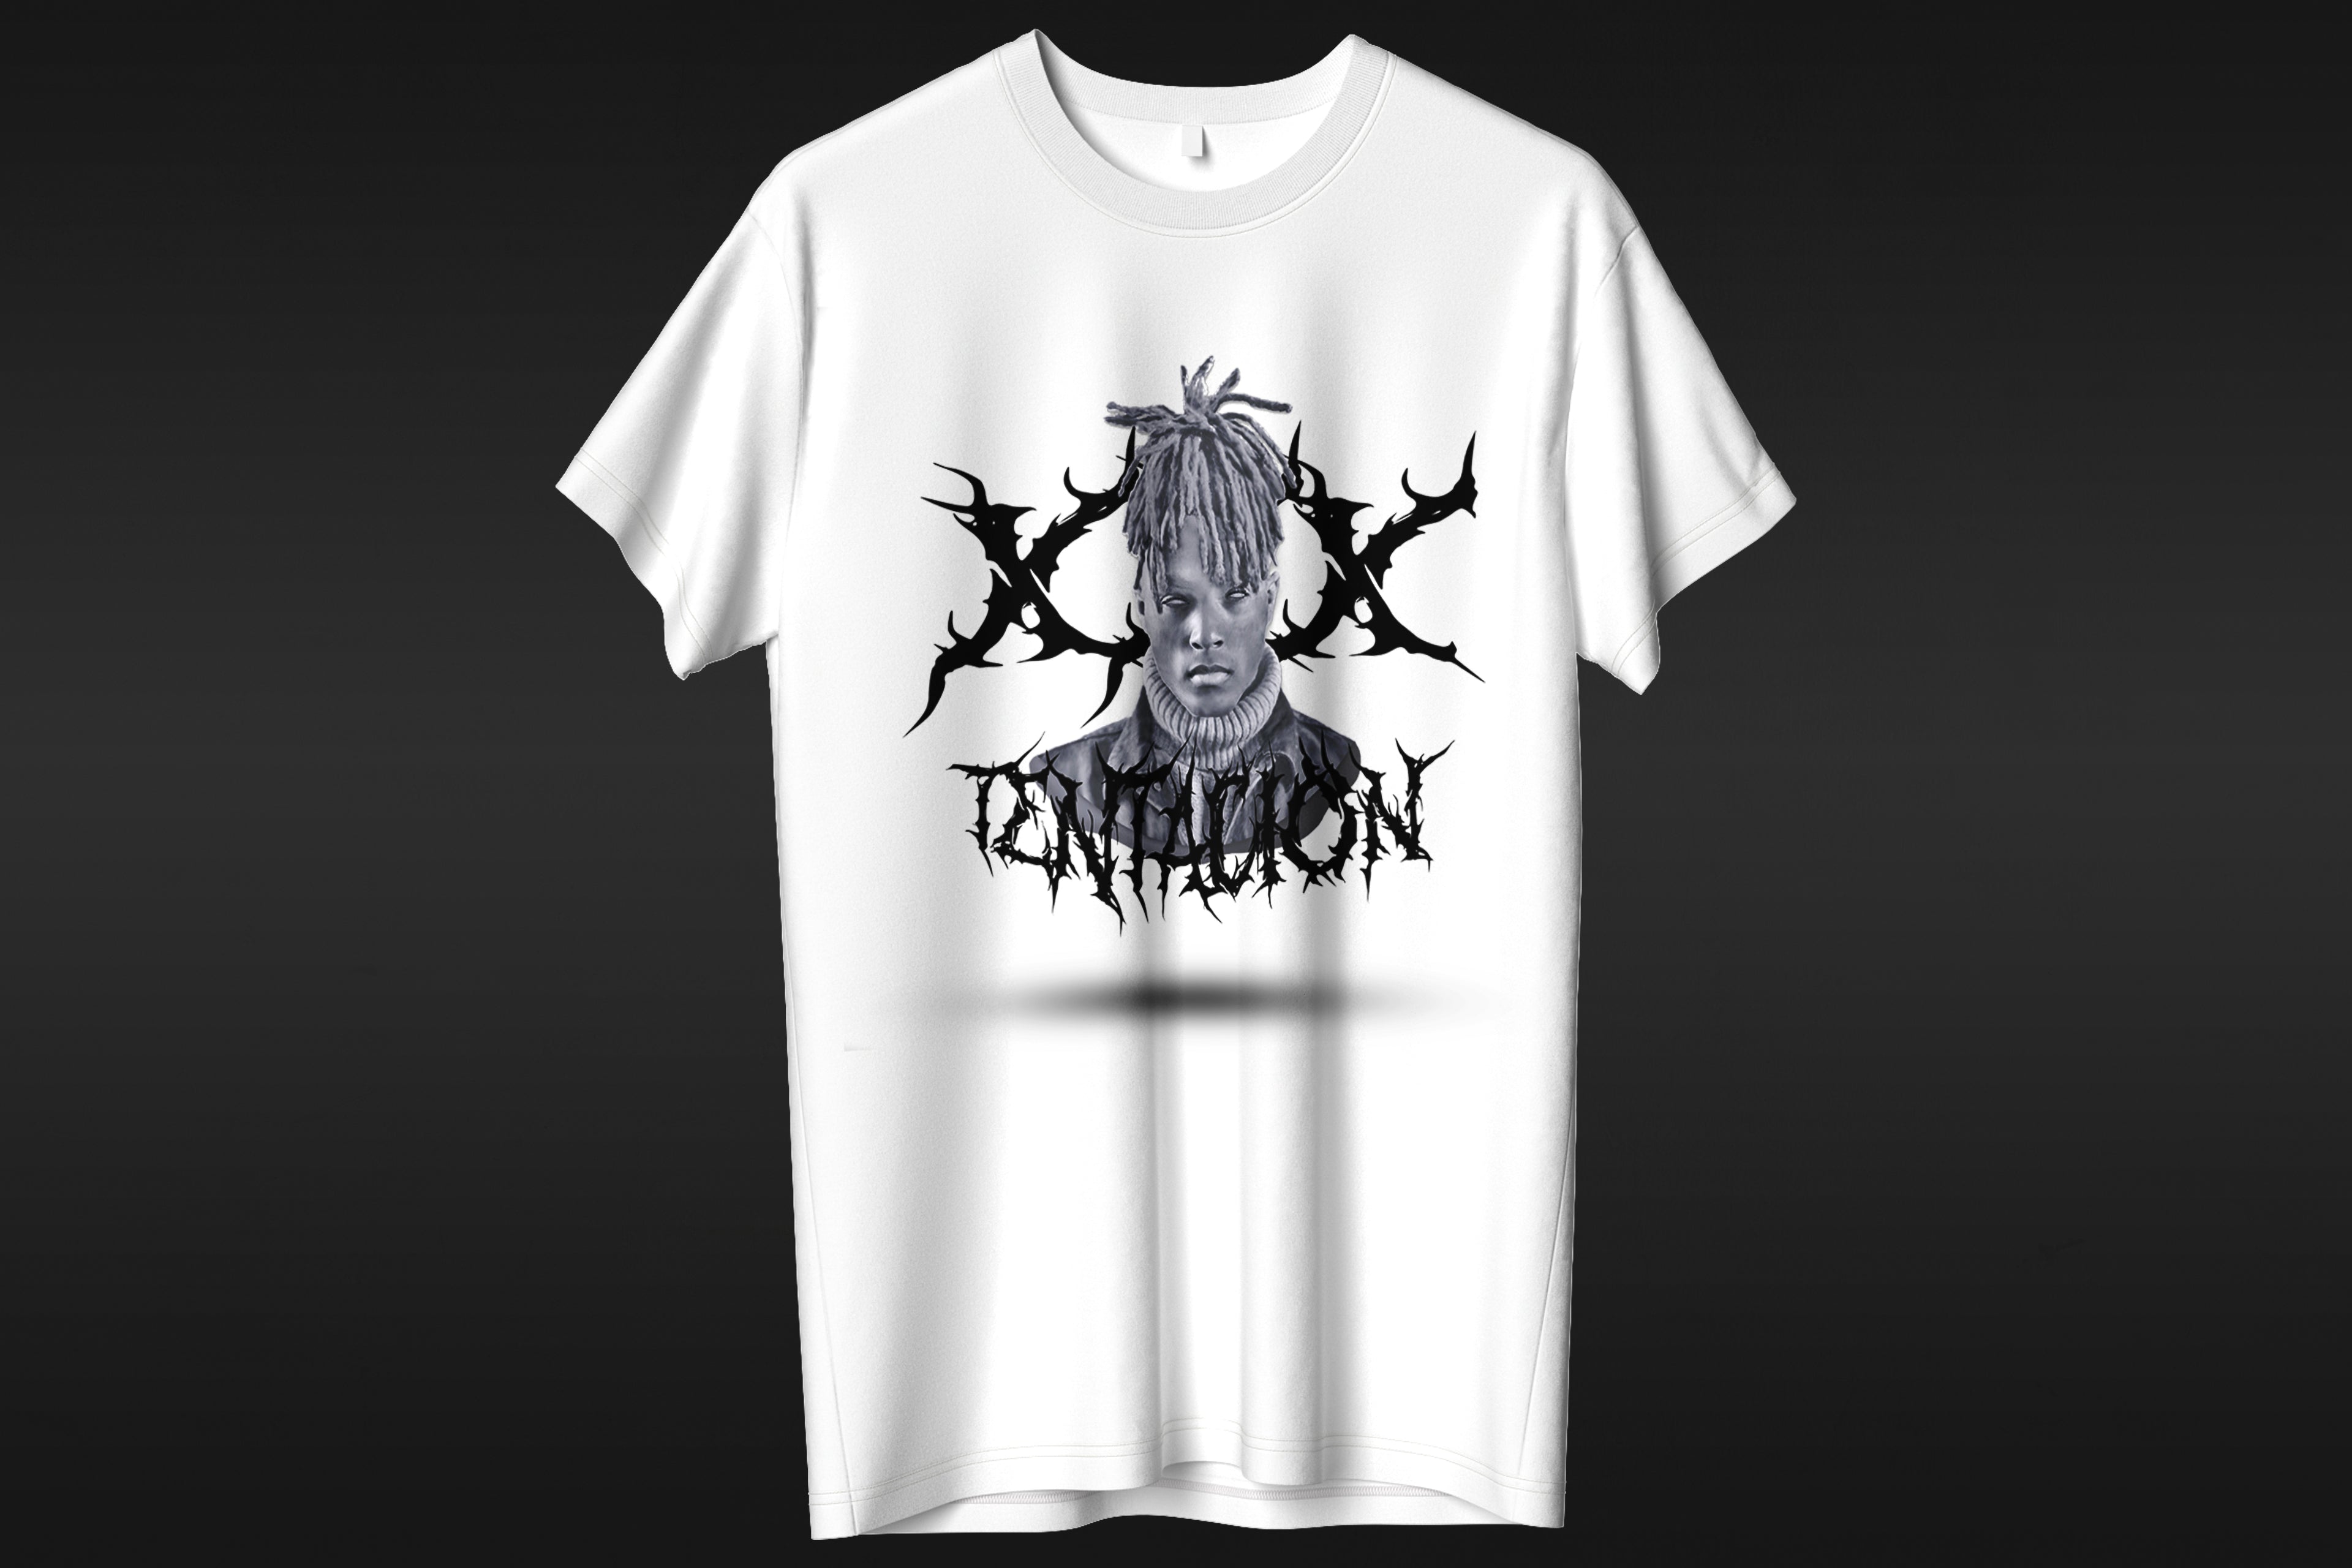 XXX Tentation - T-shirt